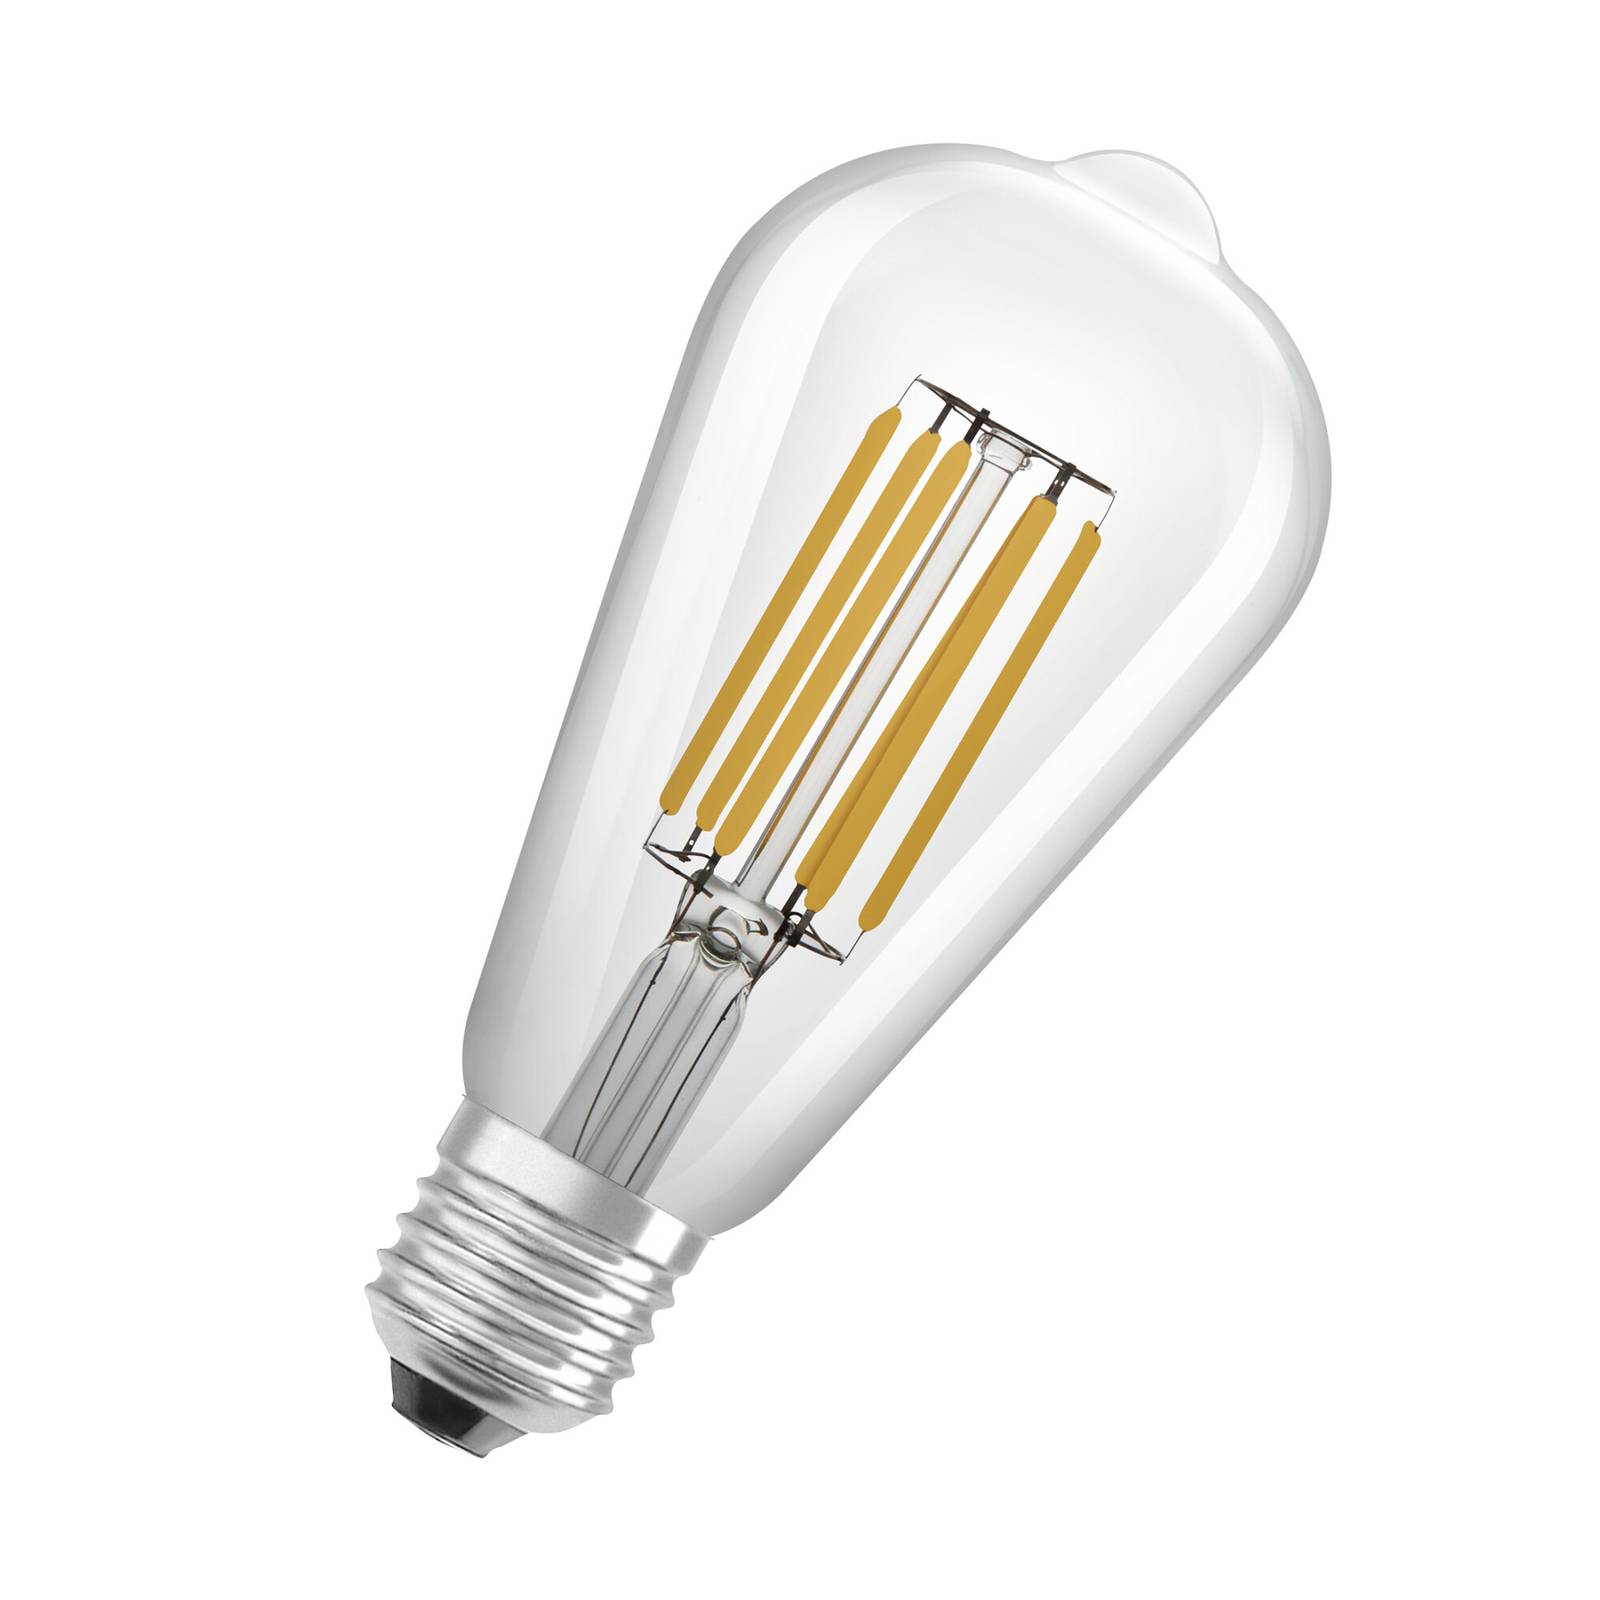 OSRAM LED ampoule rustique E27 ST64 4W 840lm 830 claire